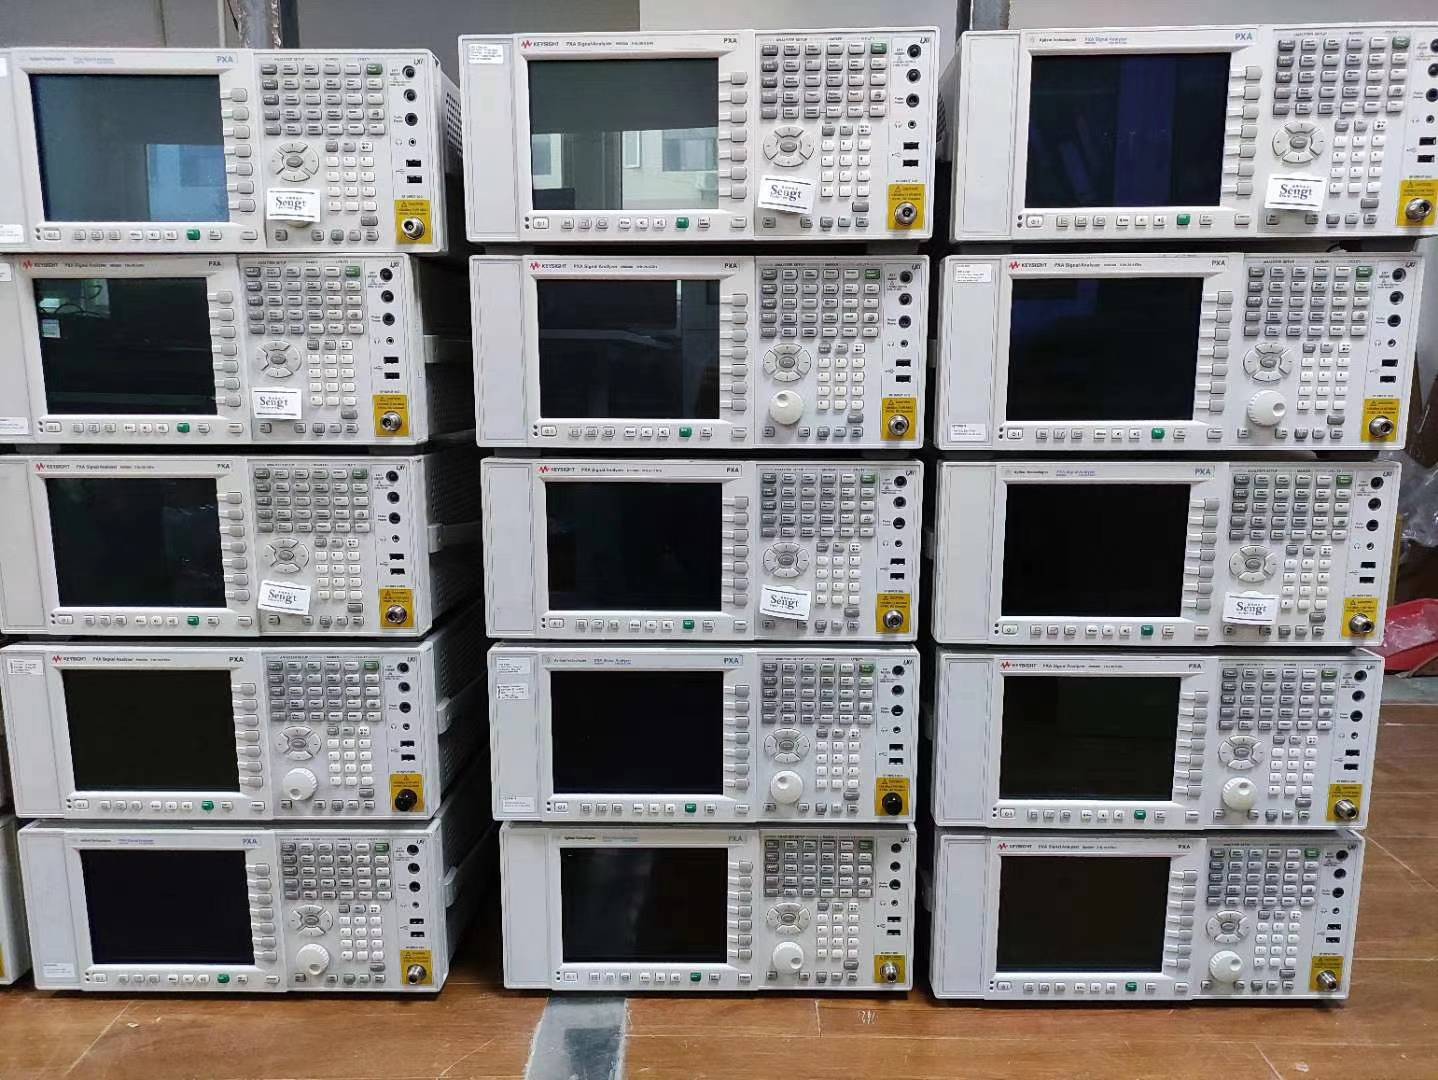 租赁销售回收维修N9030B频谱分析仪